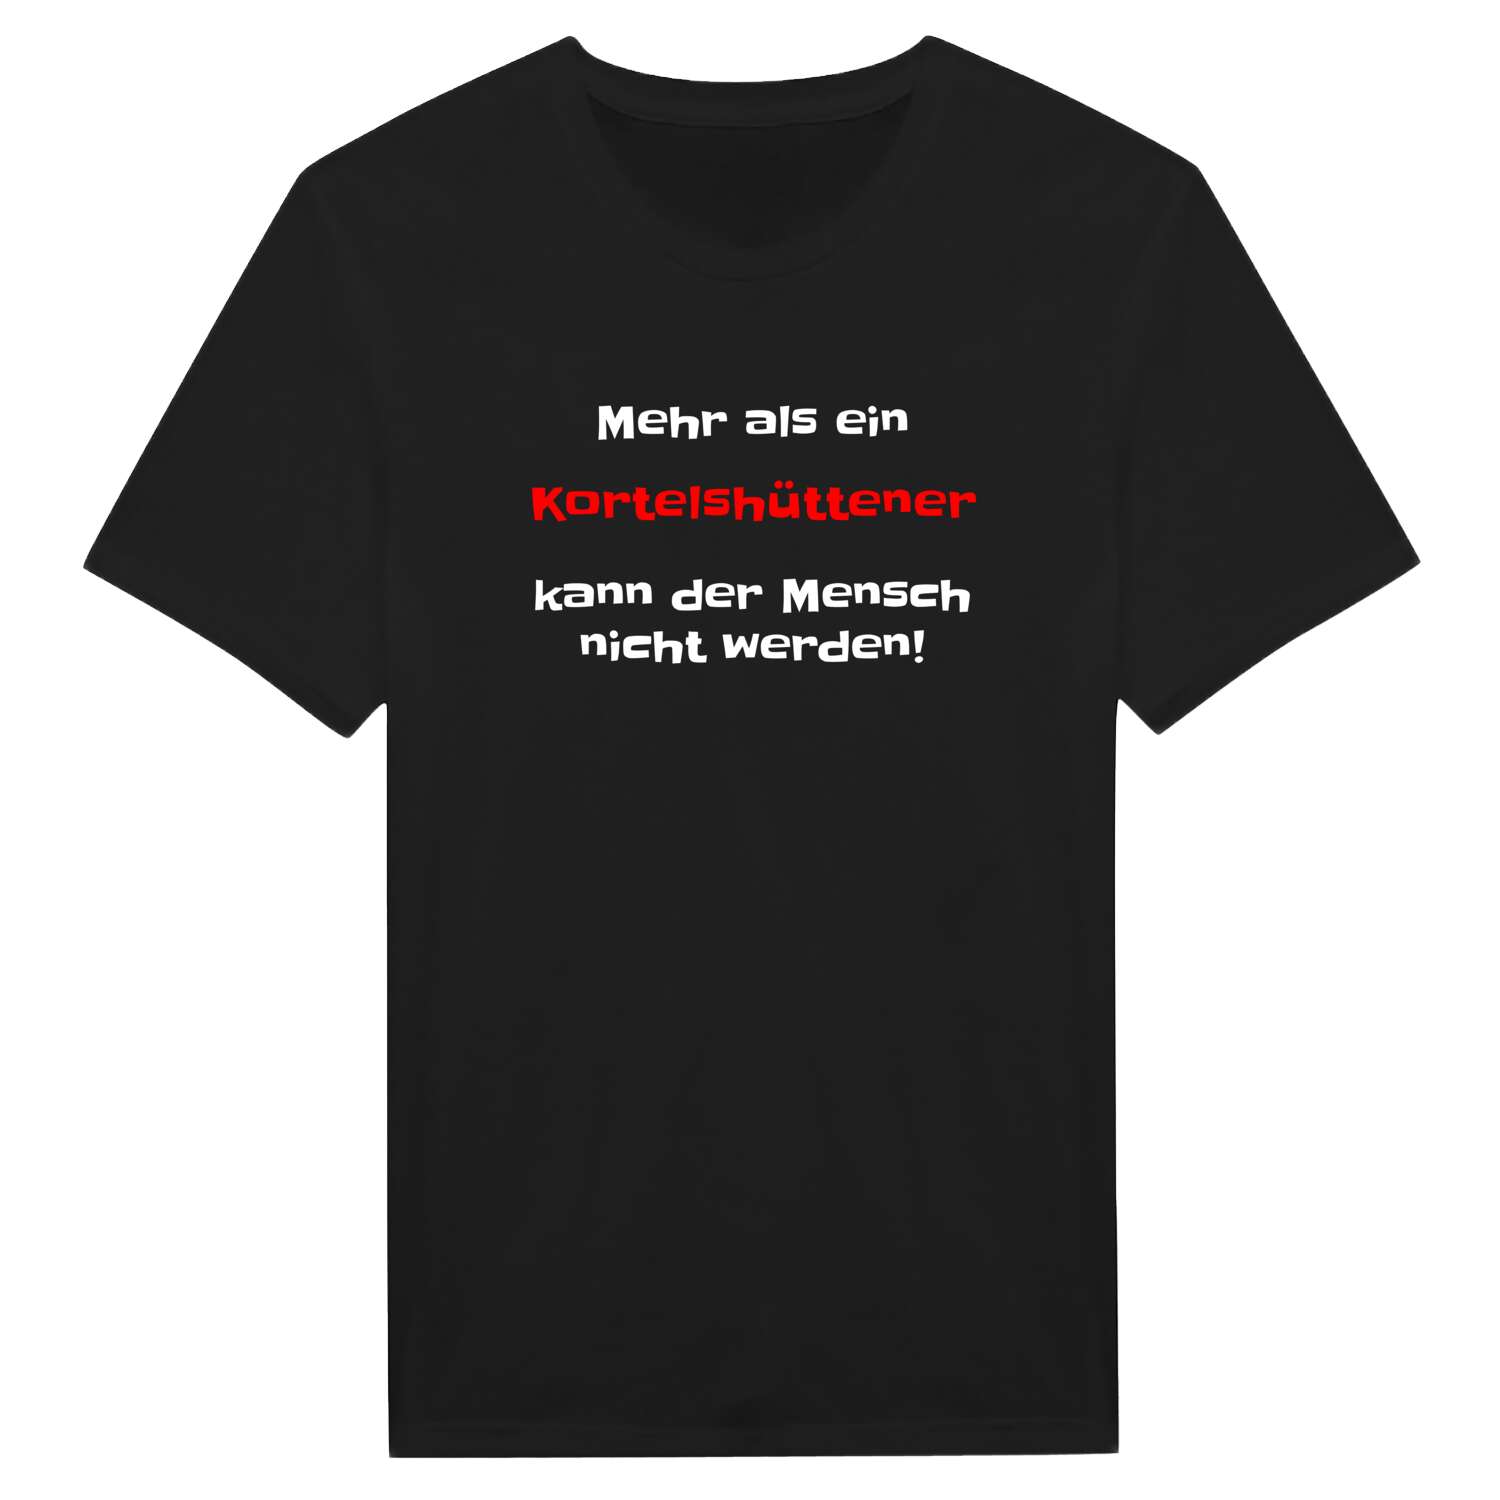 Kortelshütte T-Shirt »Mehr als ein«